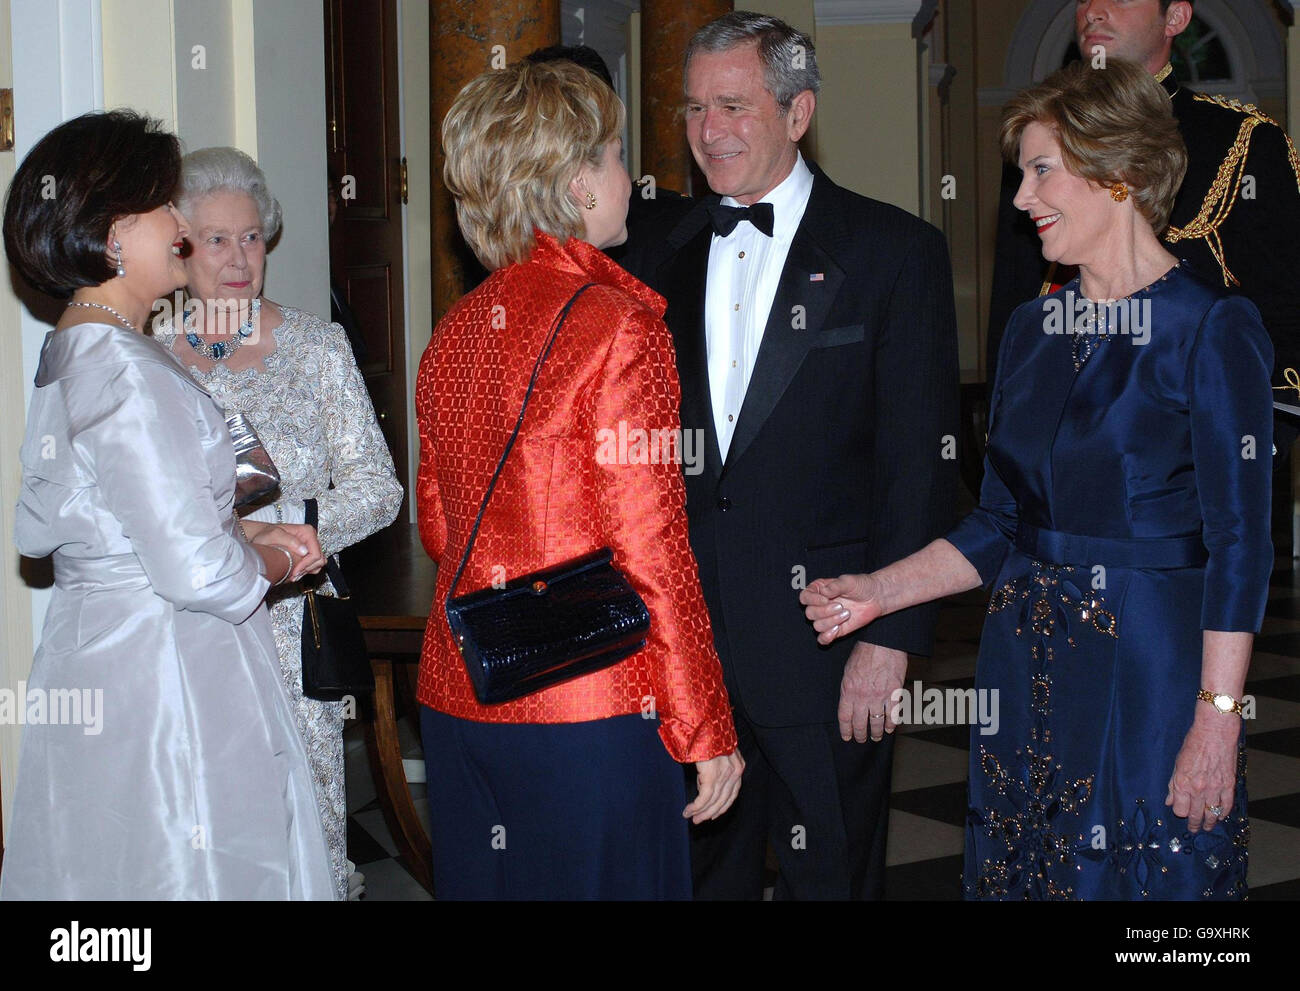 Hillary Clinton, centro, è accolto durante una cena di ritorno ospitata dal presidente degli Stati Uniti George Bush, centro e sua moglie Laura, a destra, e dalla regina Elisabetta II della Gran Bretagna, seconda a sinistra, alla residenza dell'Ambasciatore, Washington DC, l'ultimo giorno della visita di Stato di sua Maestà in America. Foto Stock